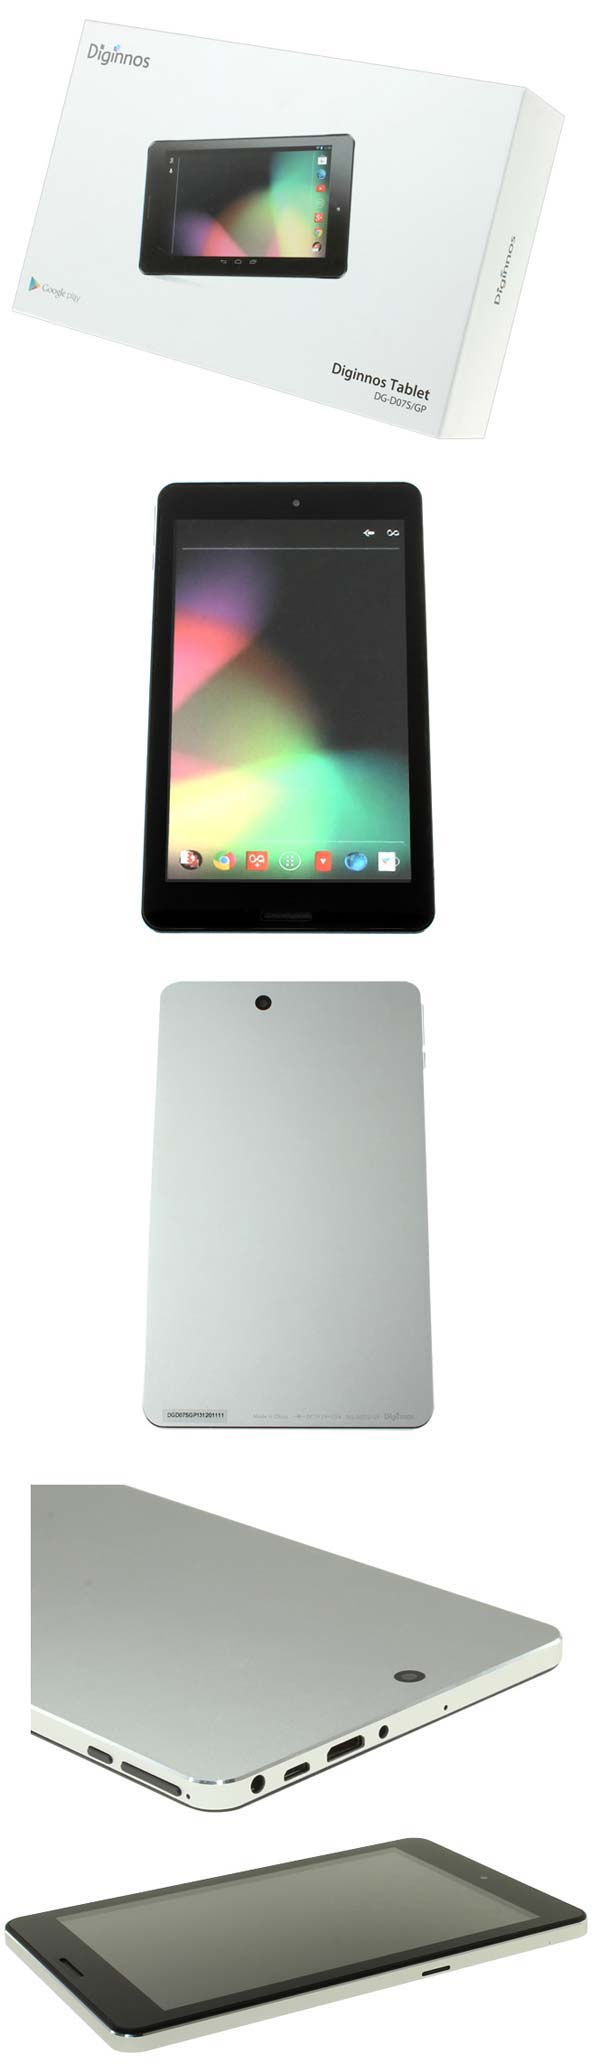 Планшет Diginnos Tablet DG-D07S/GP от Dospara